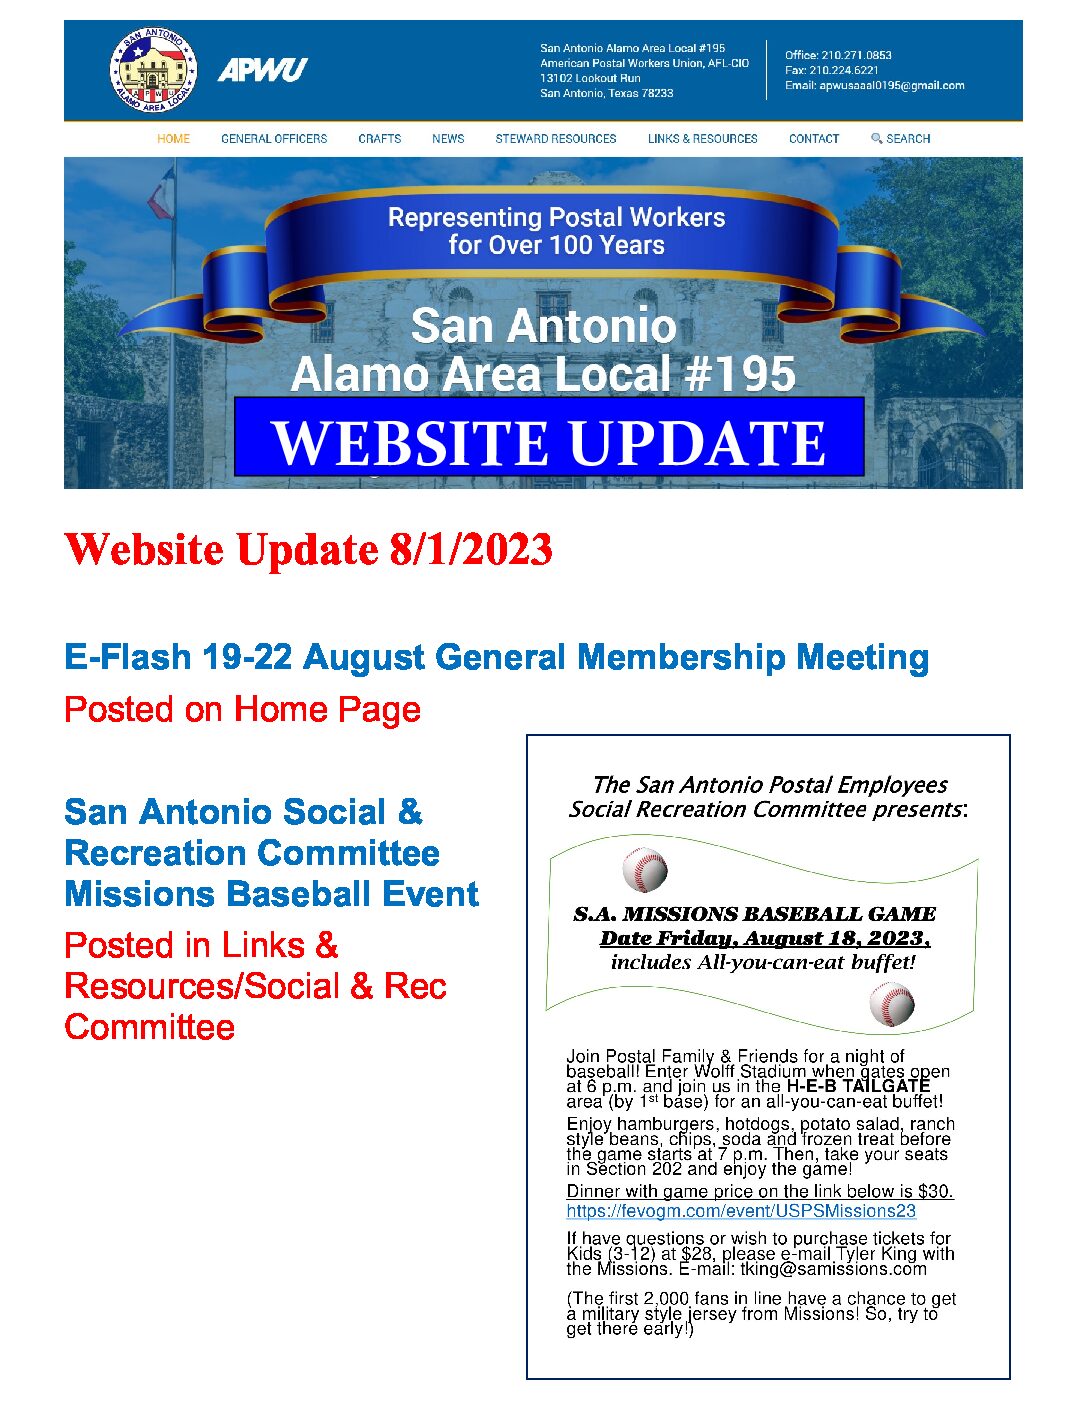 Website Update 7/7/2023 - 